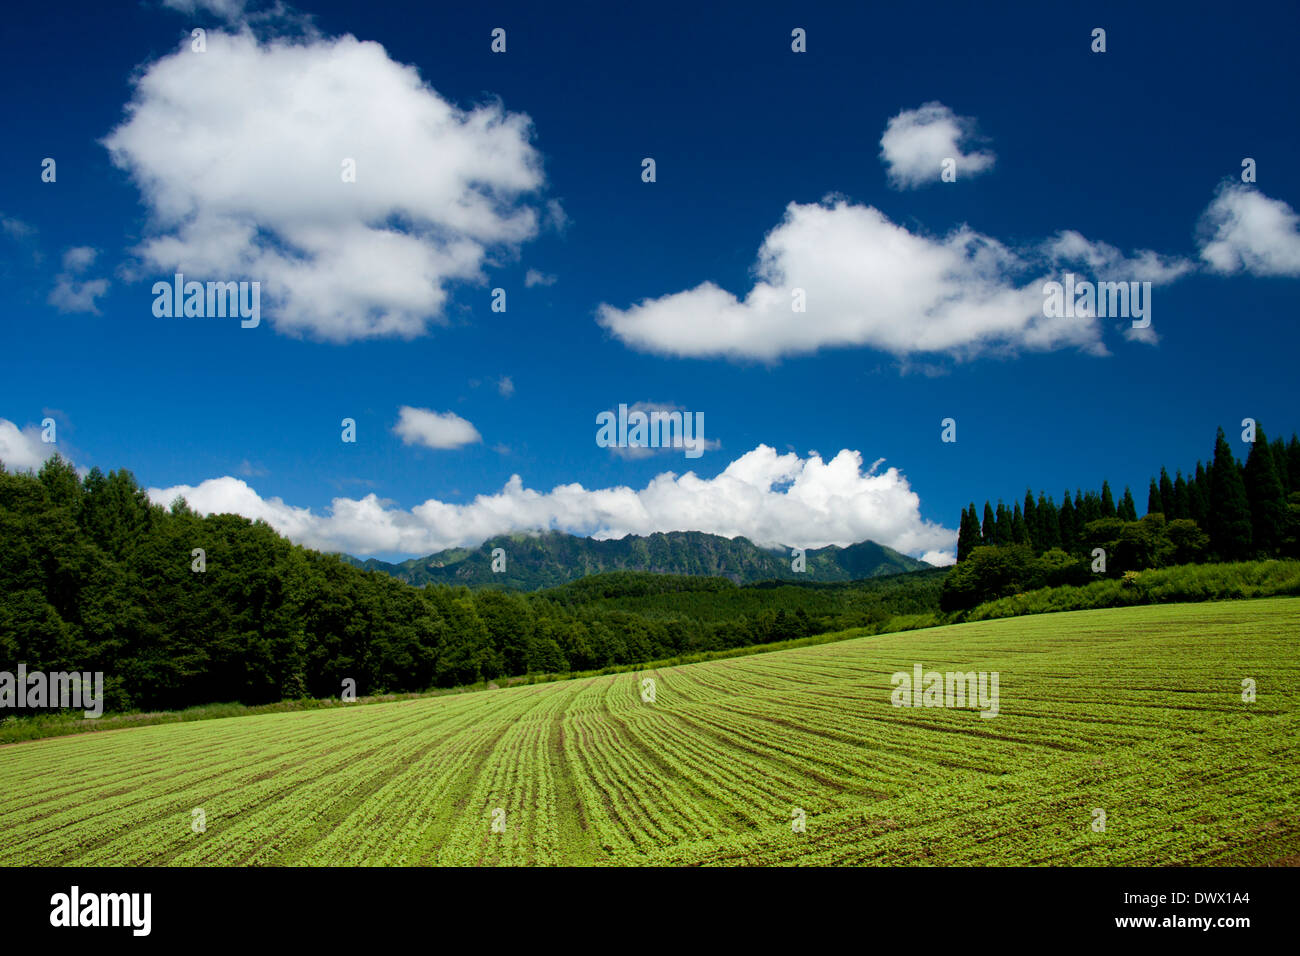 Mt. Togakushi and farmland, Nagano, Japan Stock Photo